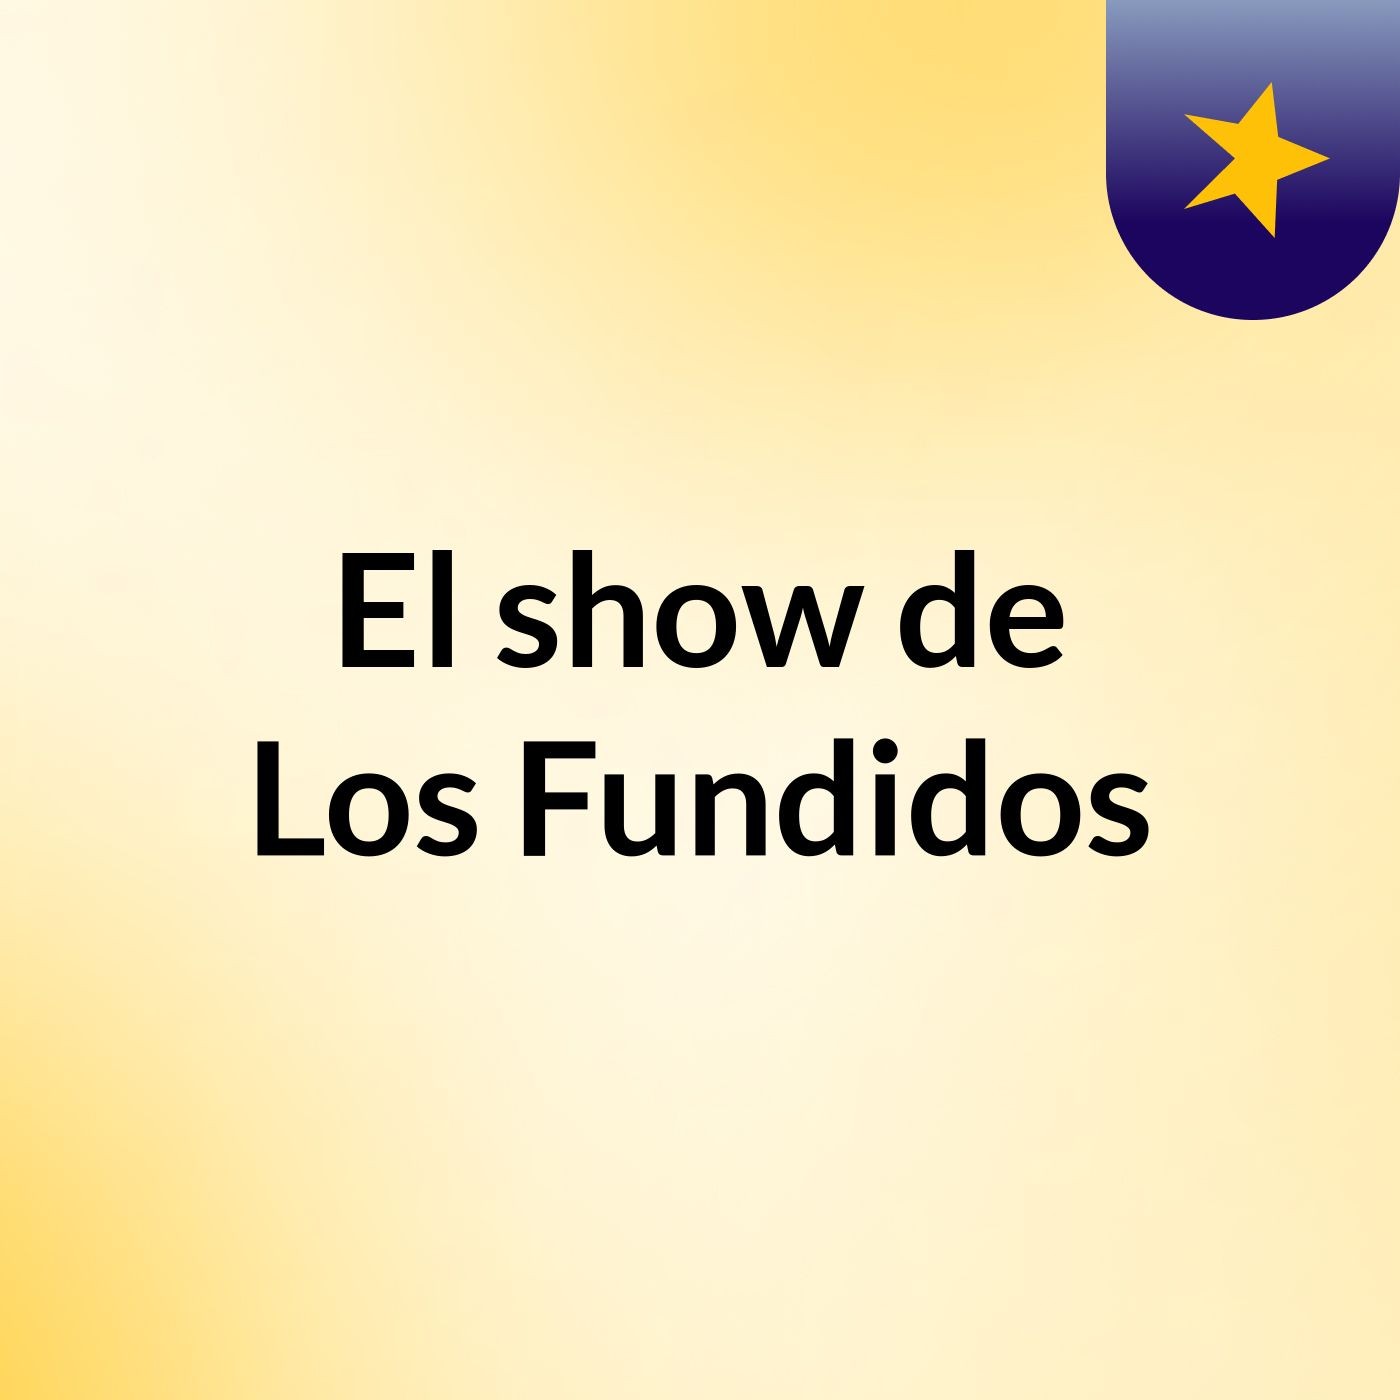 El show de Los Fundidos